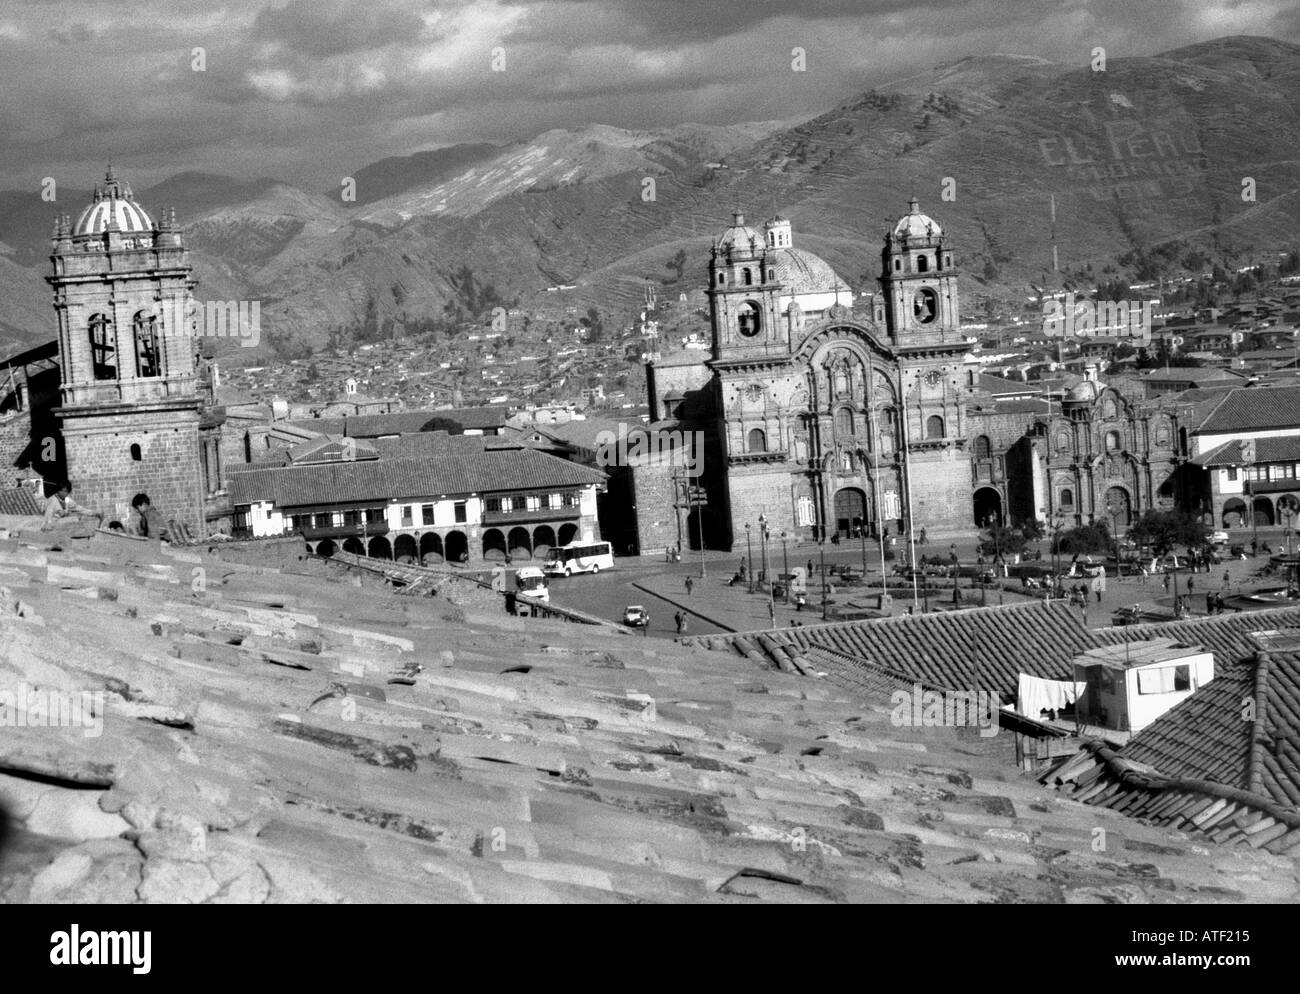 Vista panoramica colony town house chiesa cattedrale domina piazza tegola di tetto Montaggio a cielo cloud Cuzco Perù Sud America Latina Foto Stock